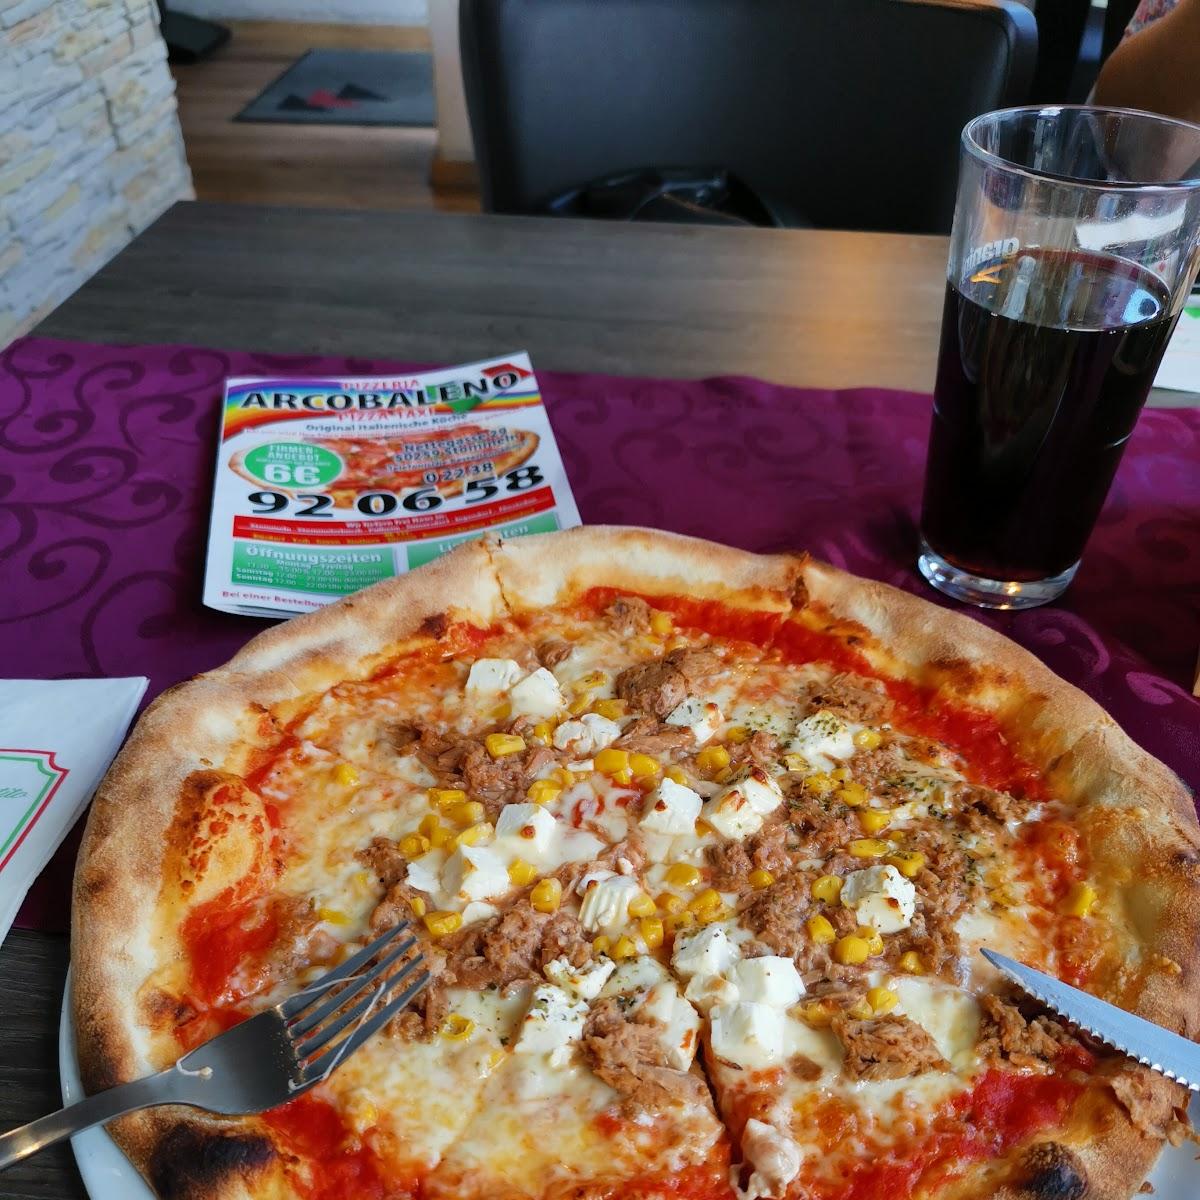 Restaurant "Pizzeria Arcobaleno Pizzataxi" in Pulheim